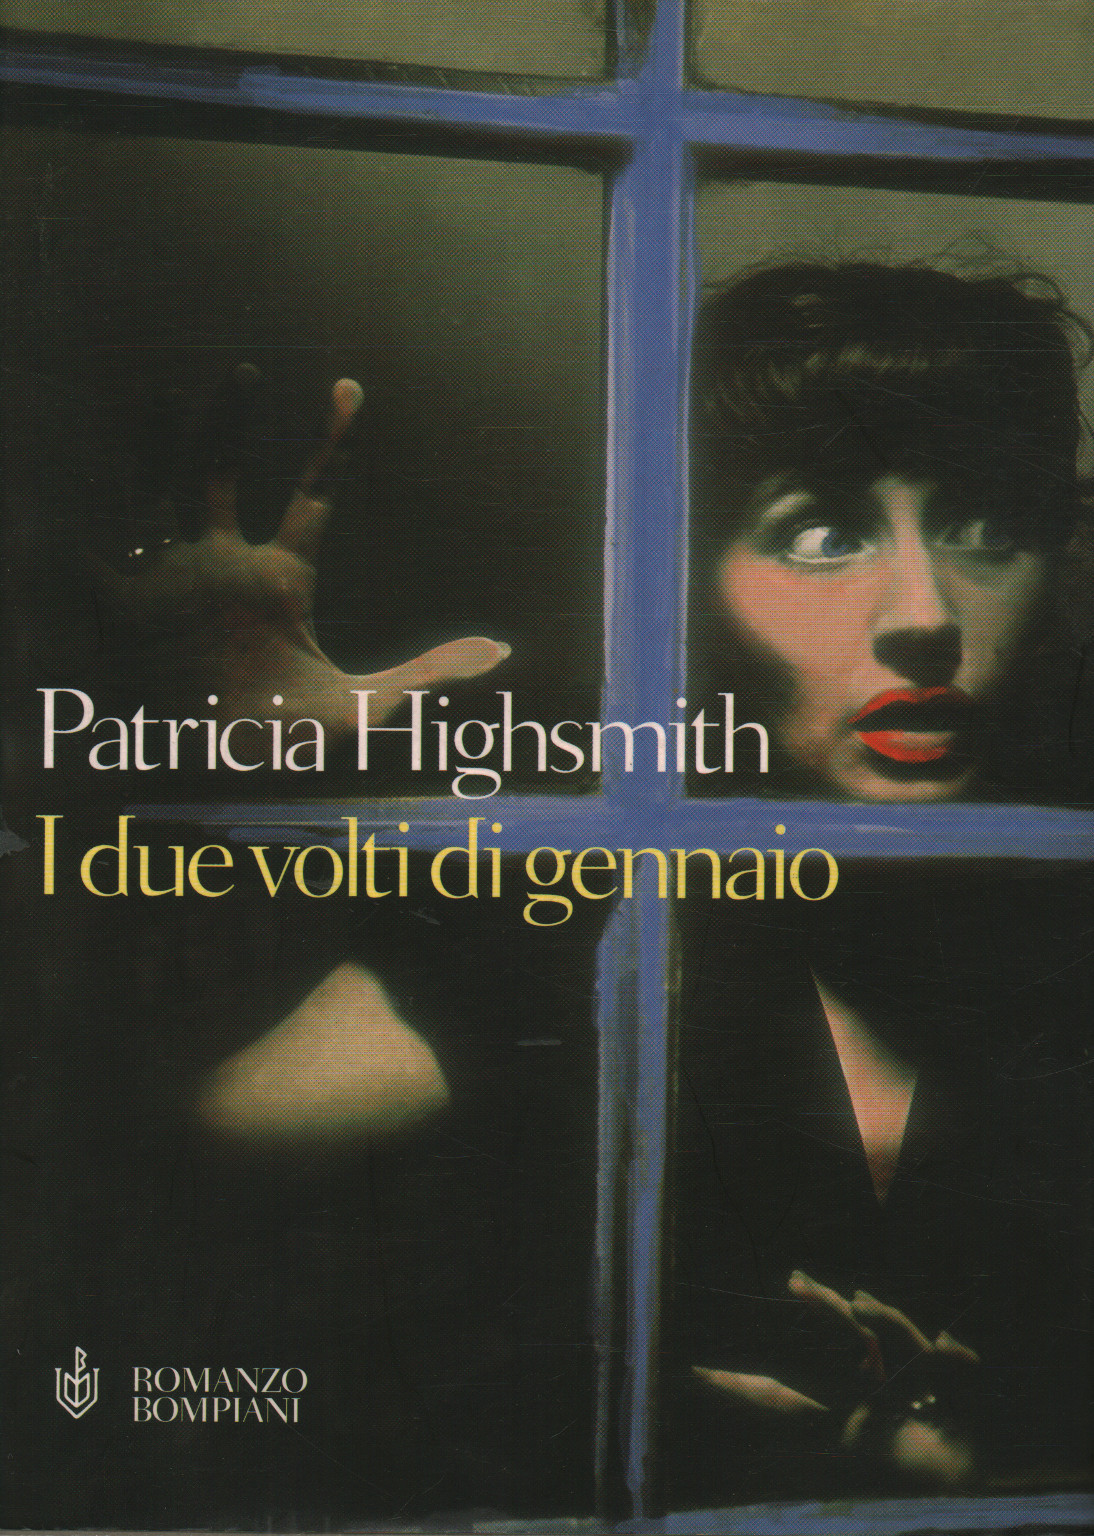 Las dos caras de enero, Patricia Highsmith